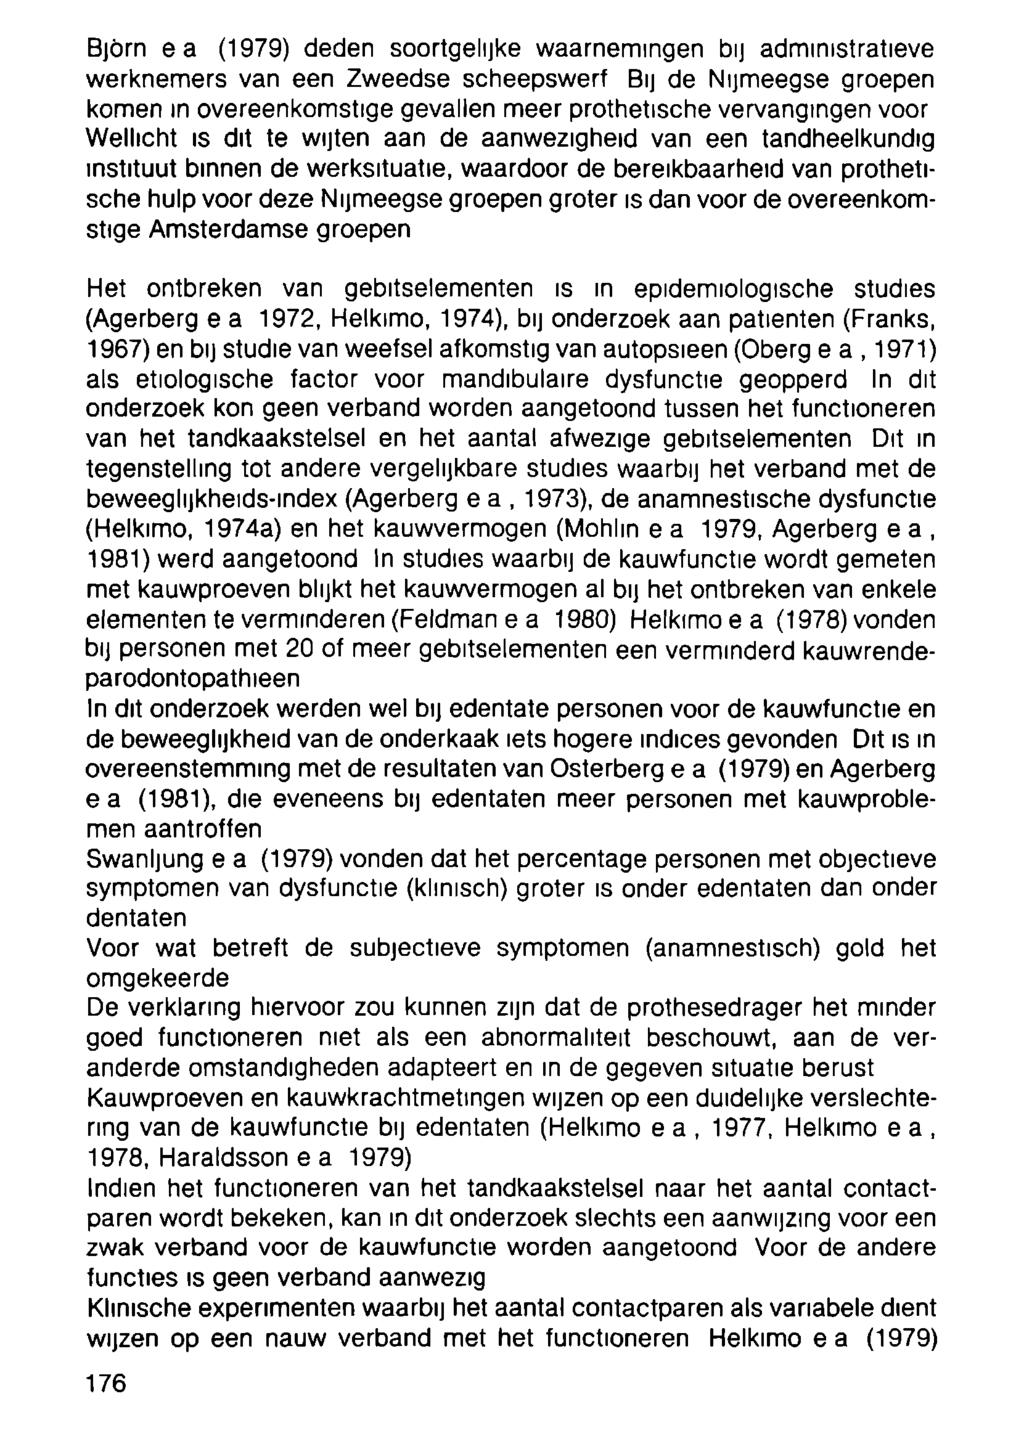 Björn e a (1979) deden soortgelijke waarnemingen bij administratieve werknemers van een Zweedse scheepswerf BIJ de Nijmeegse groepen komen in overeenkomstige gevallen meer prothetische vervangingen